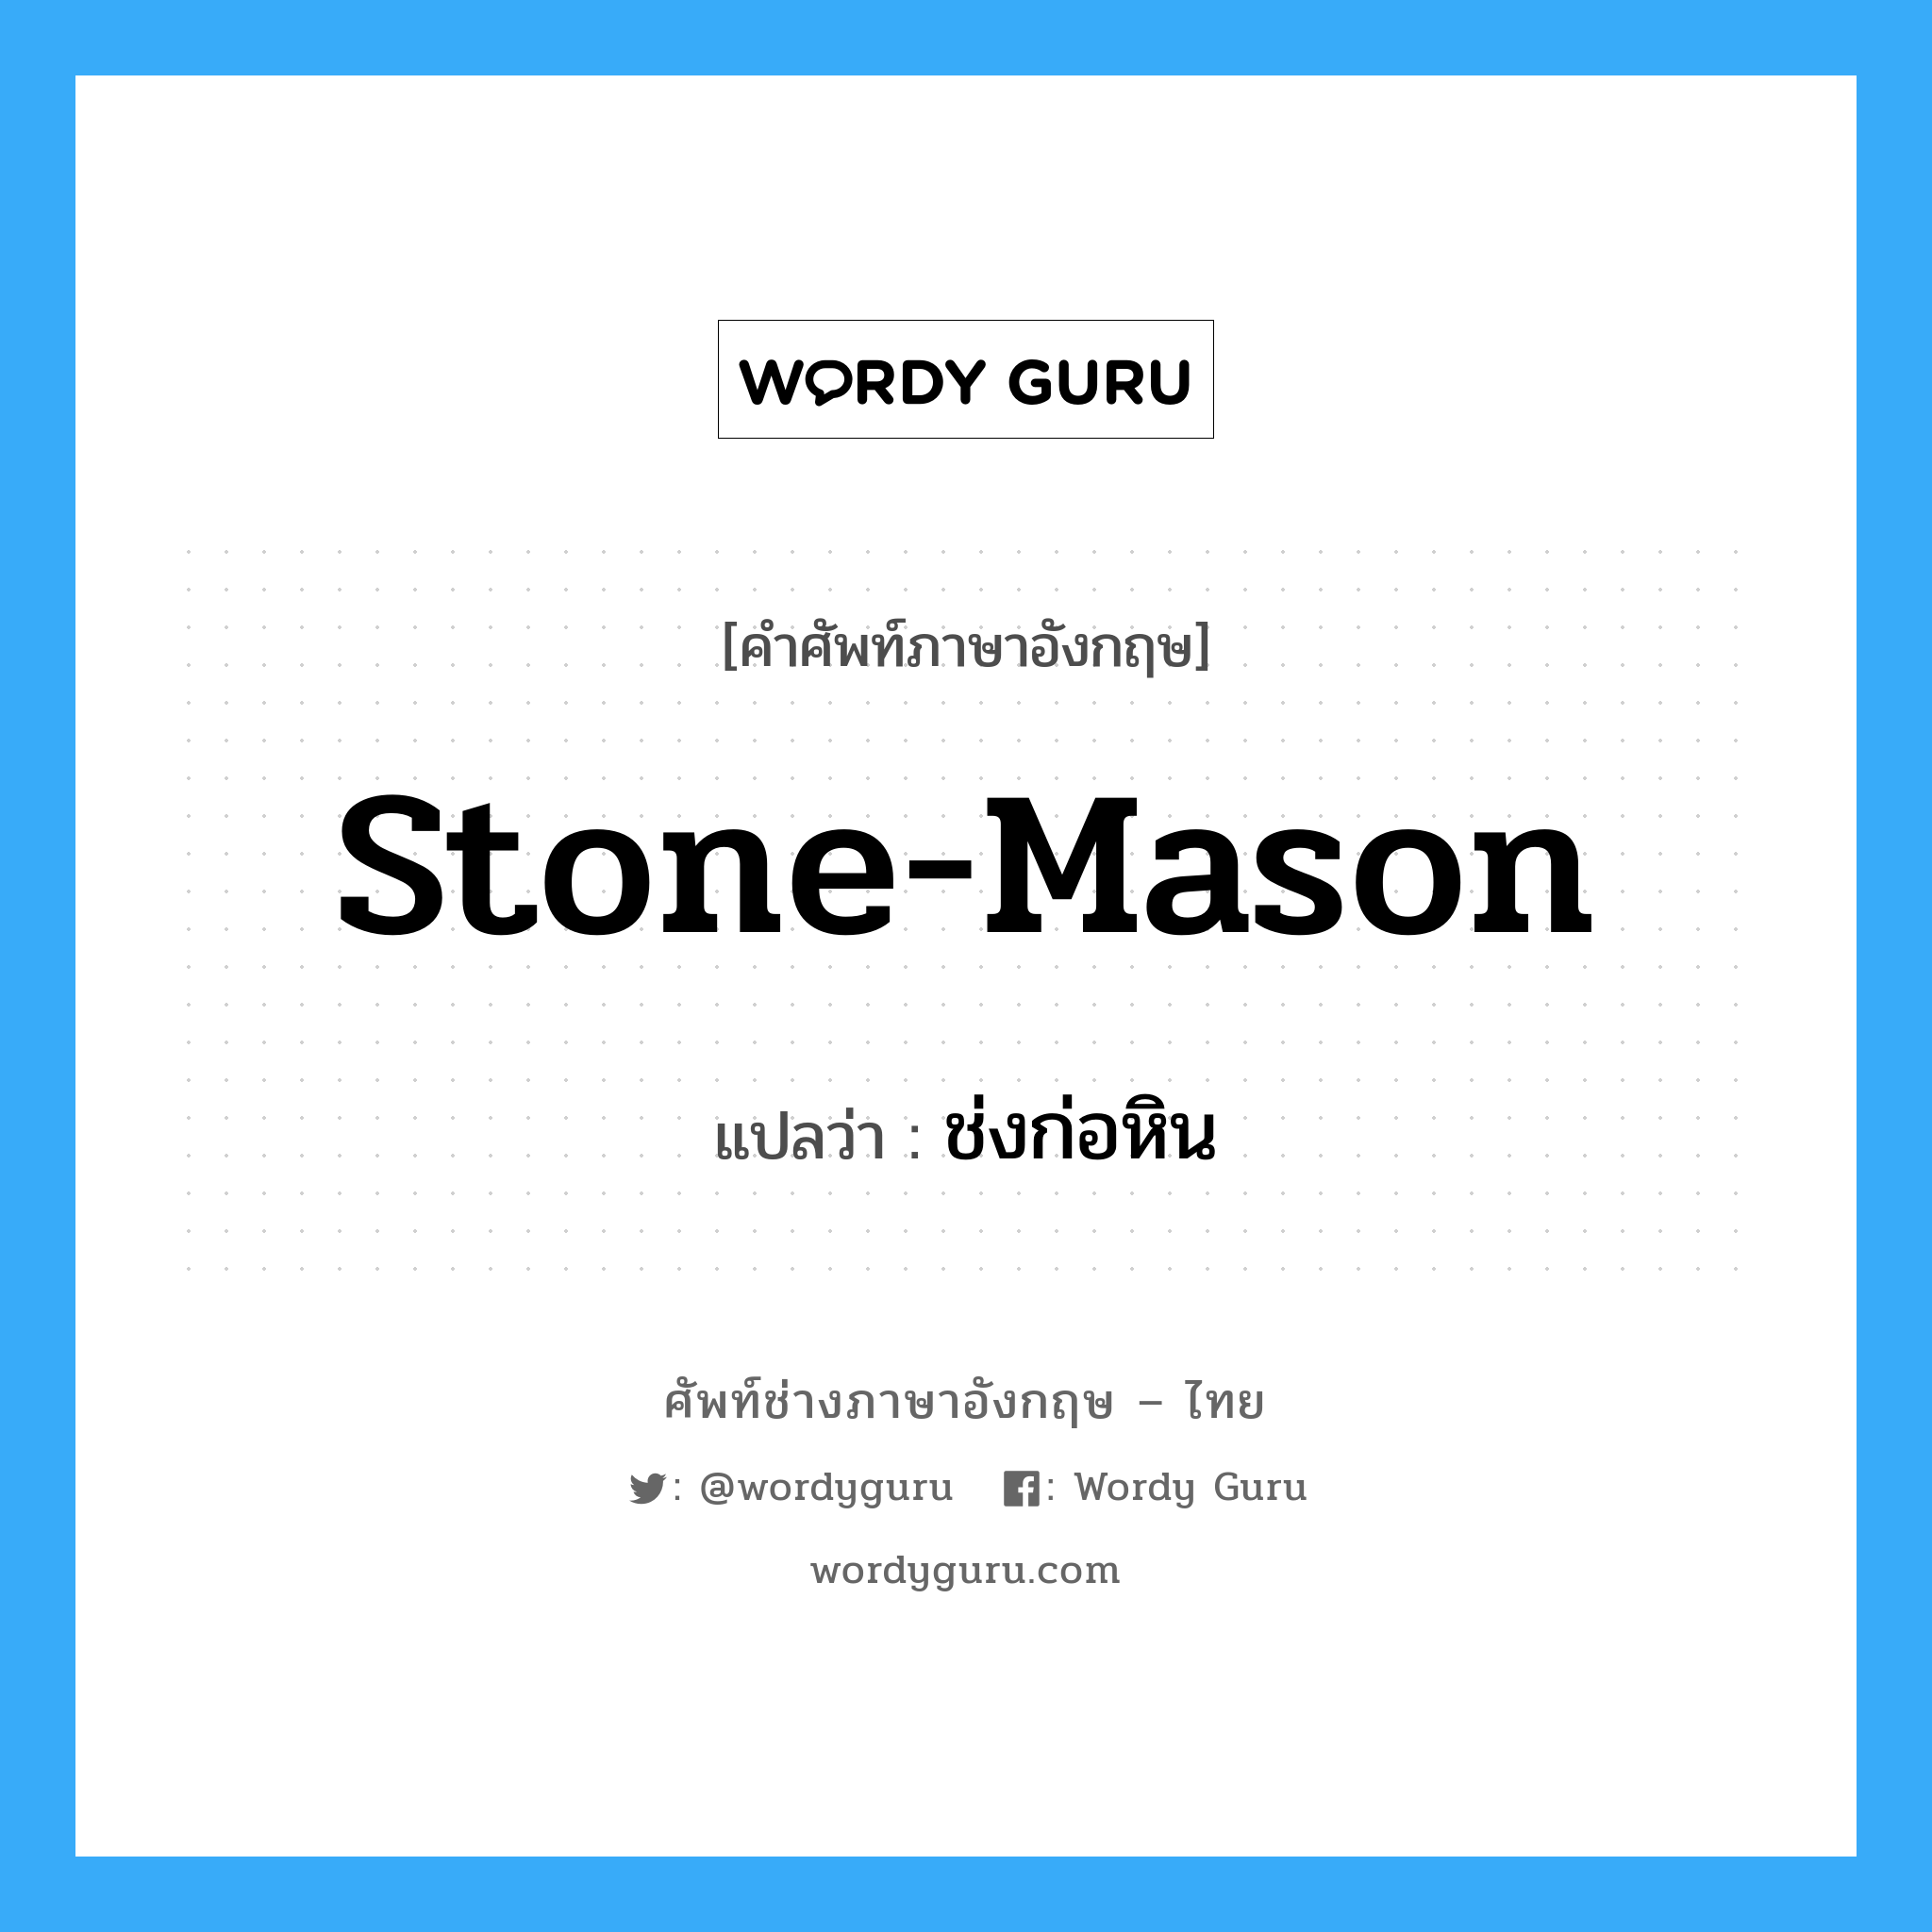 ช่งก่อหิน ภาษาอังกฤษ?, คำศัพท์ช่างภาษาอังกฤษ - ไทย ช่งก่อหิน คำศัพท์ภาษาอังกฤษ ช่งก่อหิน แปลว่า stone-mason